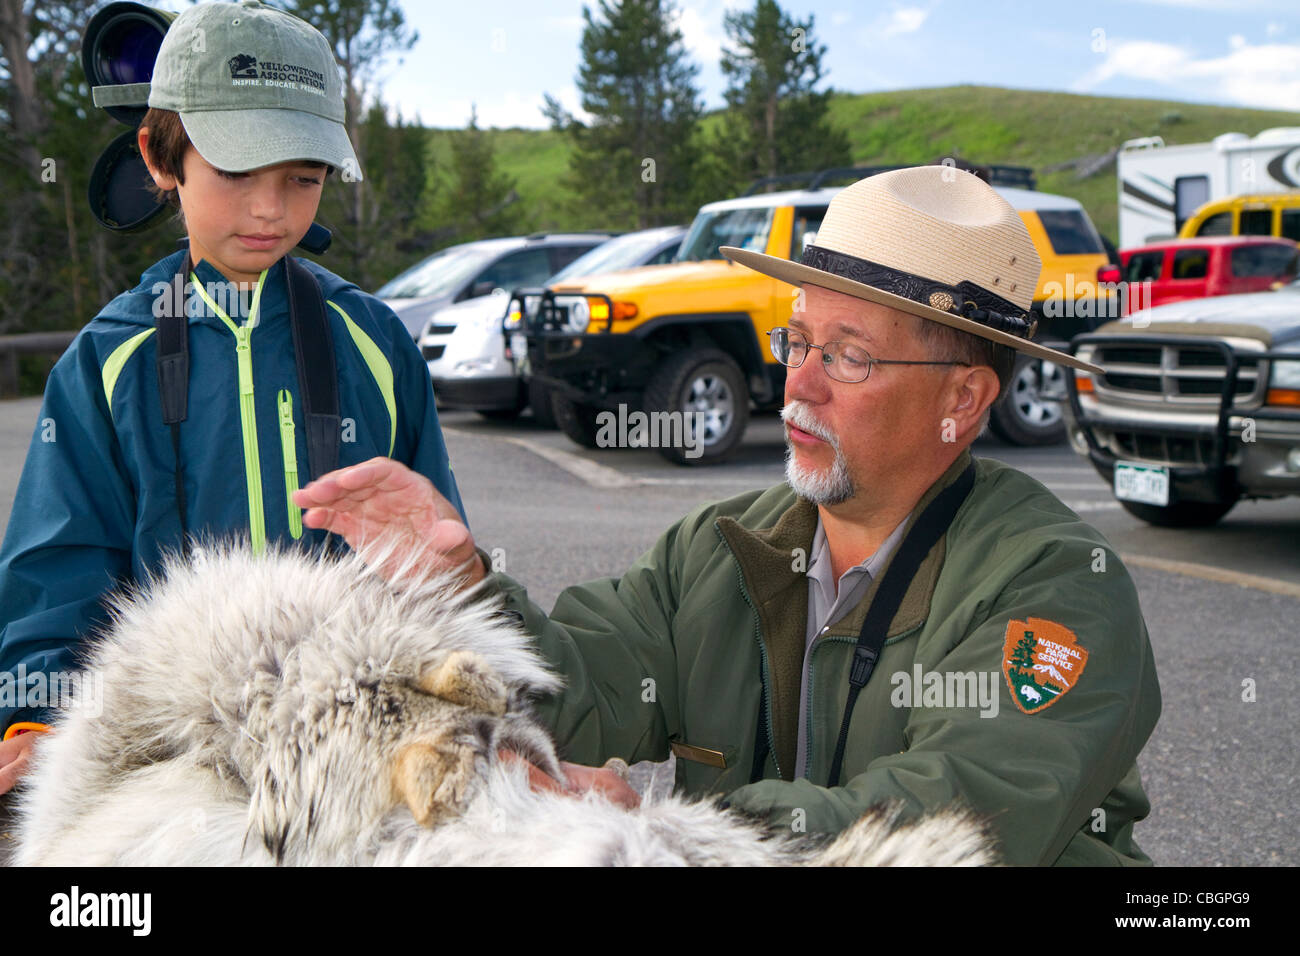 Park ranger les enfants montrant une peau de loup dans le Parc National de Yellowstone, aux États-Unis. Banque D'Images